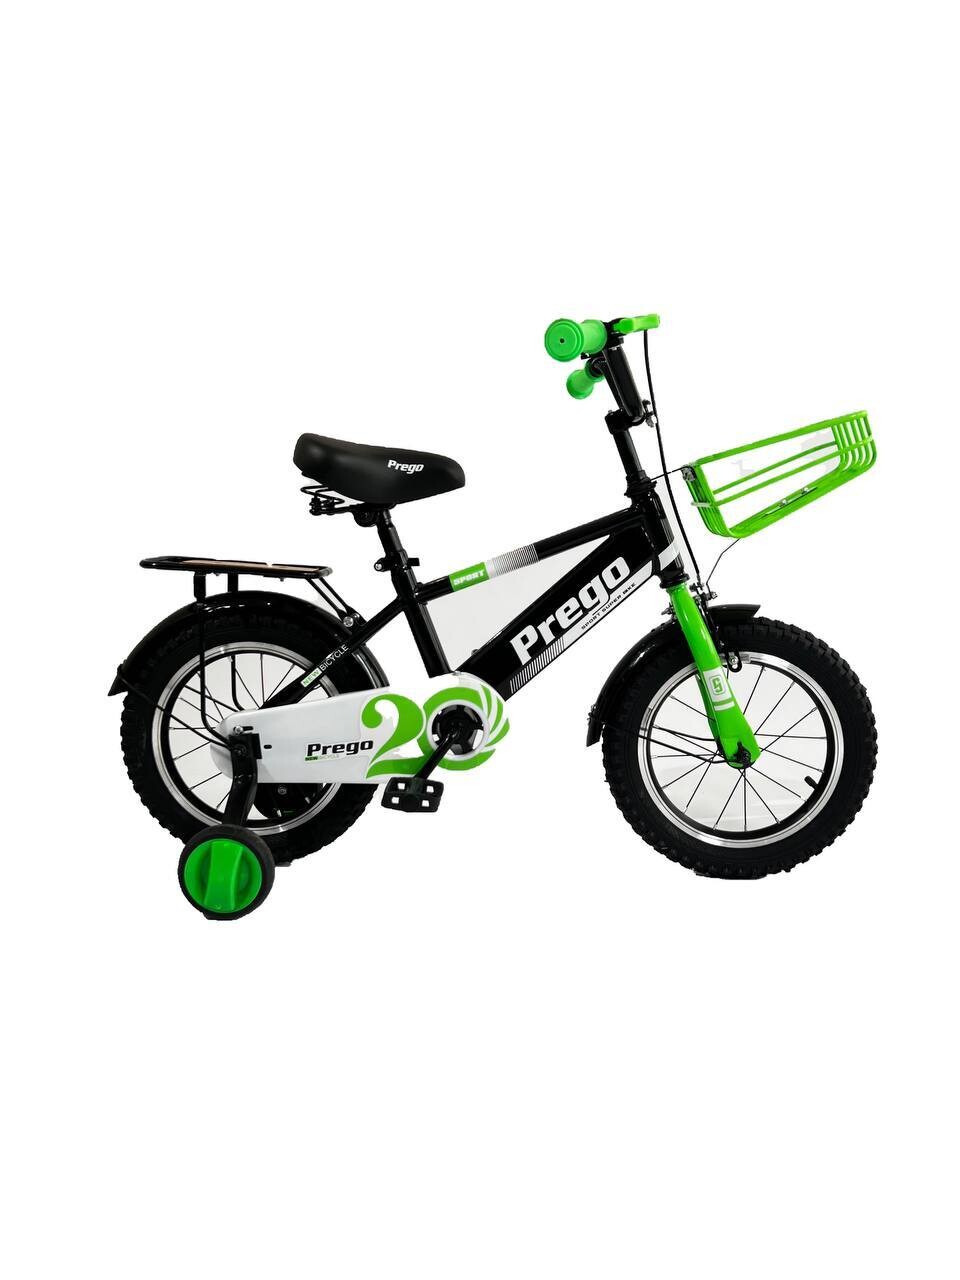 Двухколесный велосипед Prego 12D, зеленый